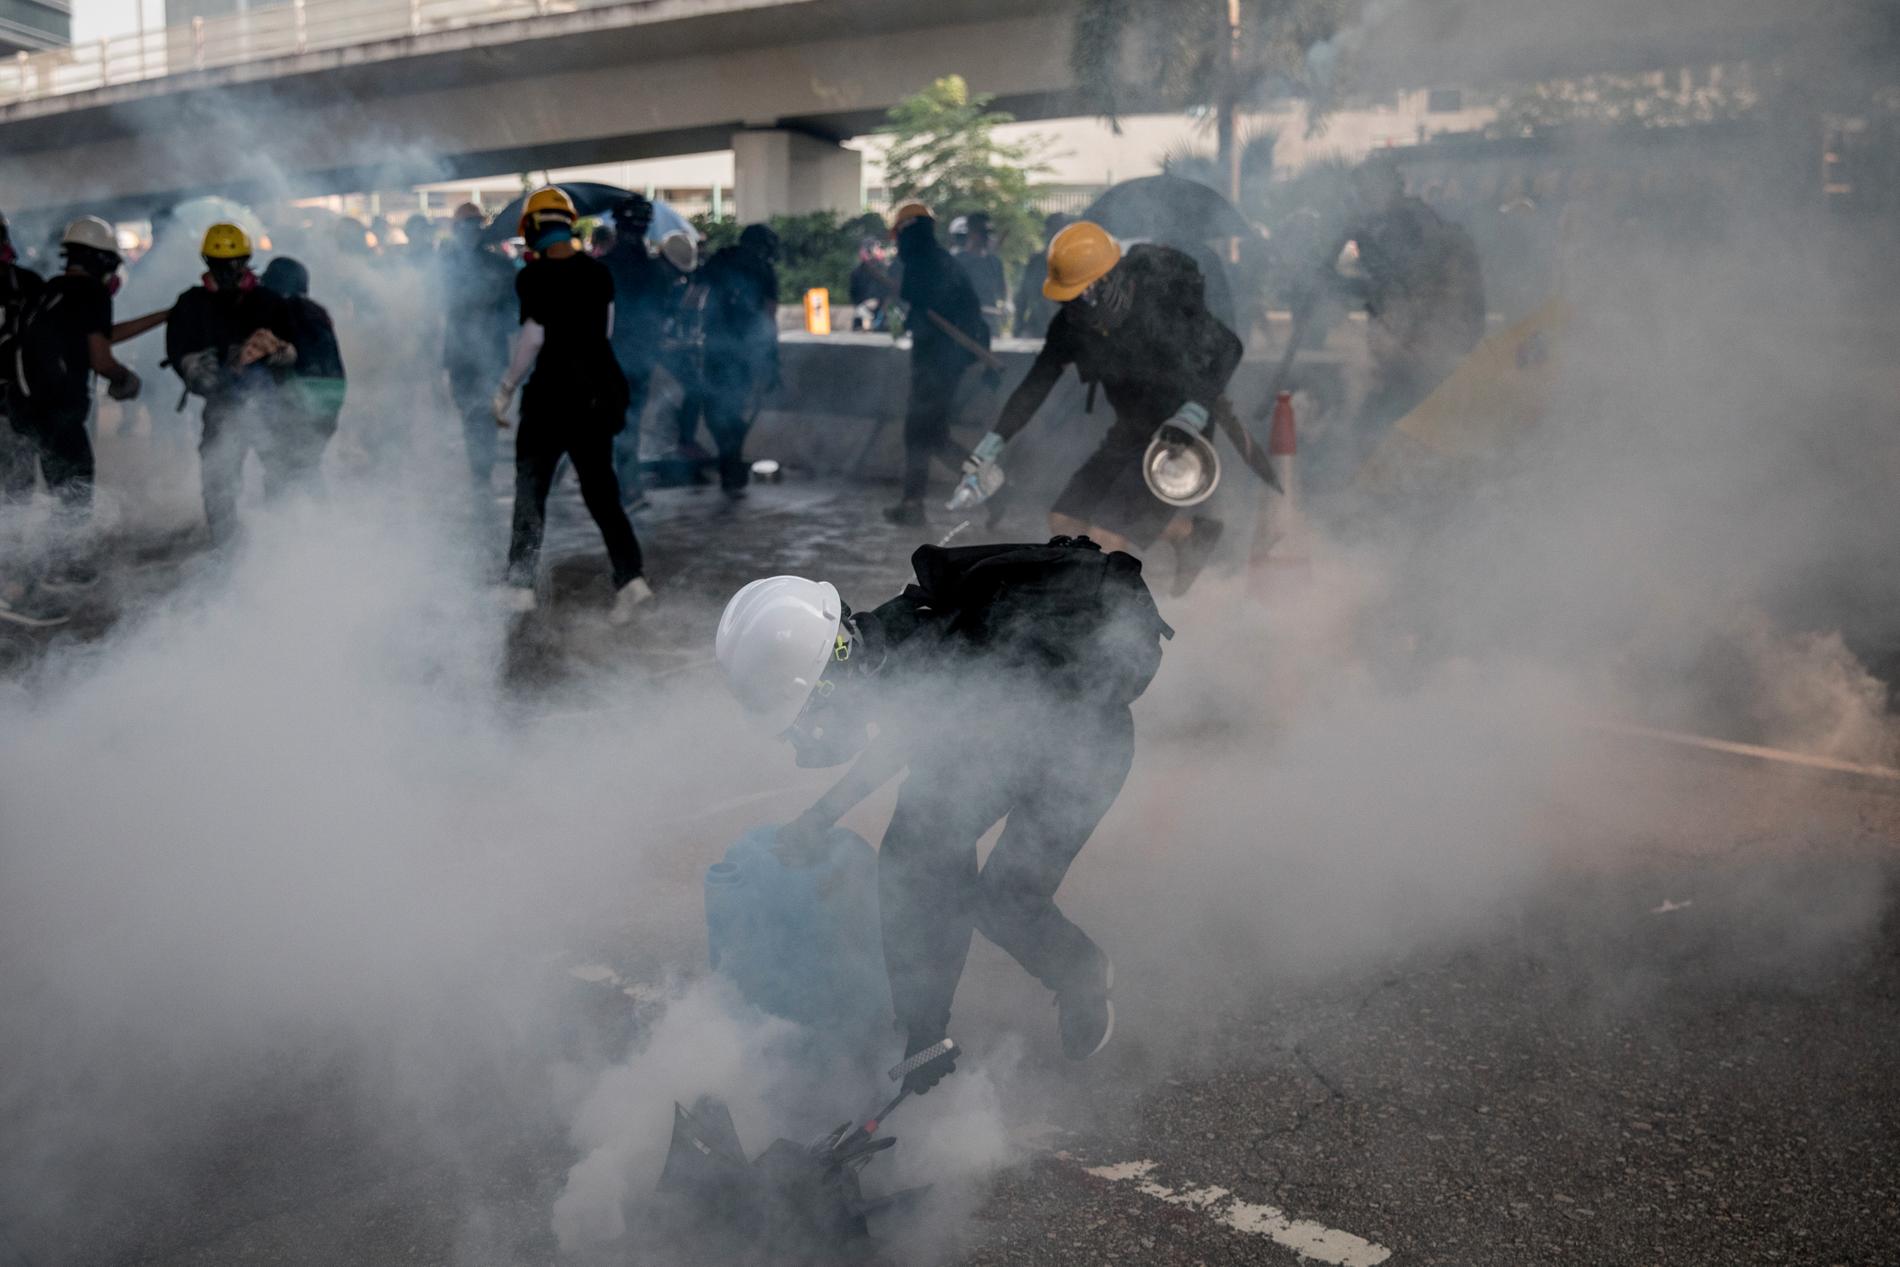 Våldsamma sammandrabbningar rapporteras mellan demonstranter och polis i Hongkong